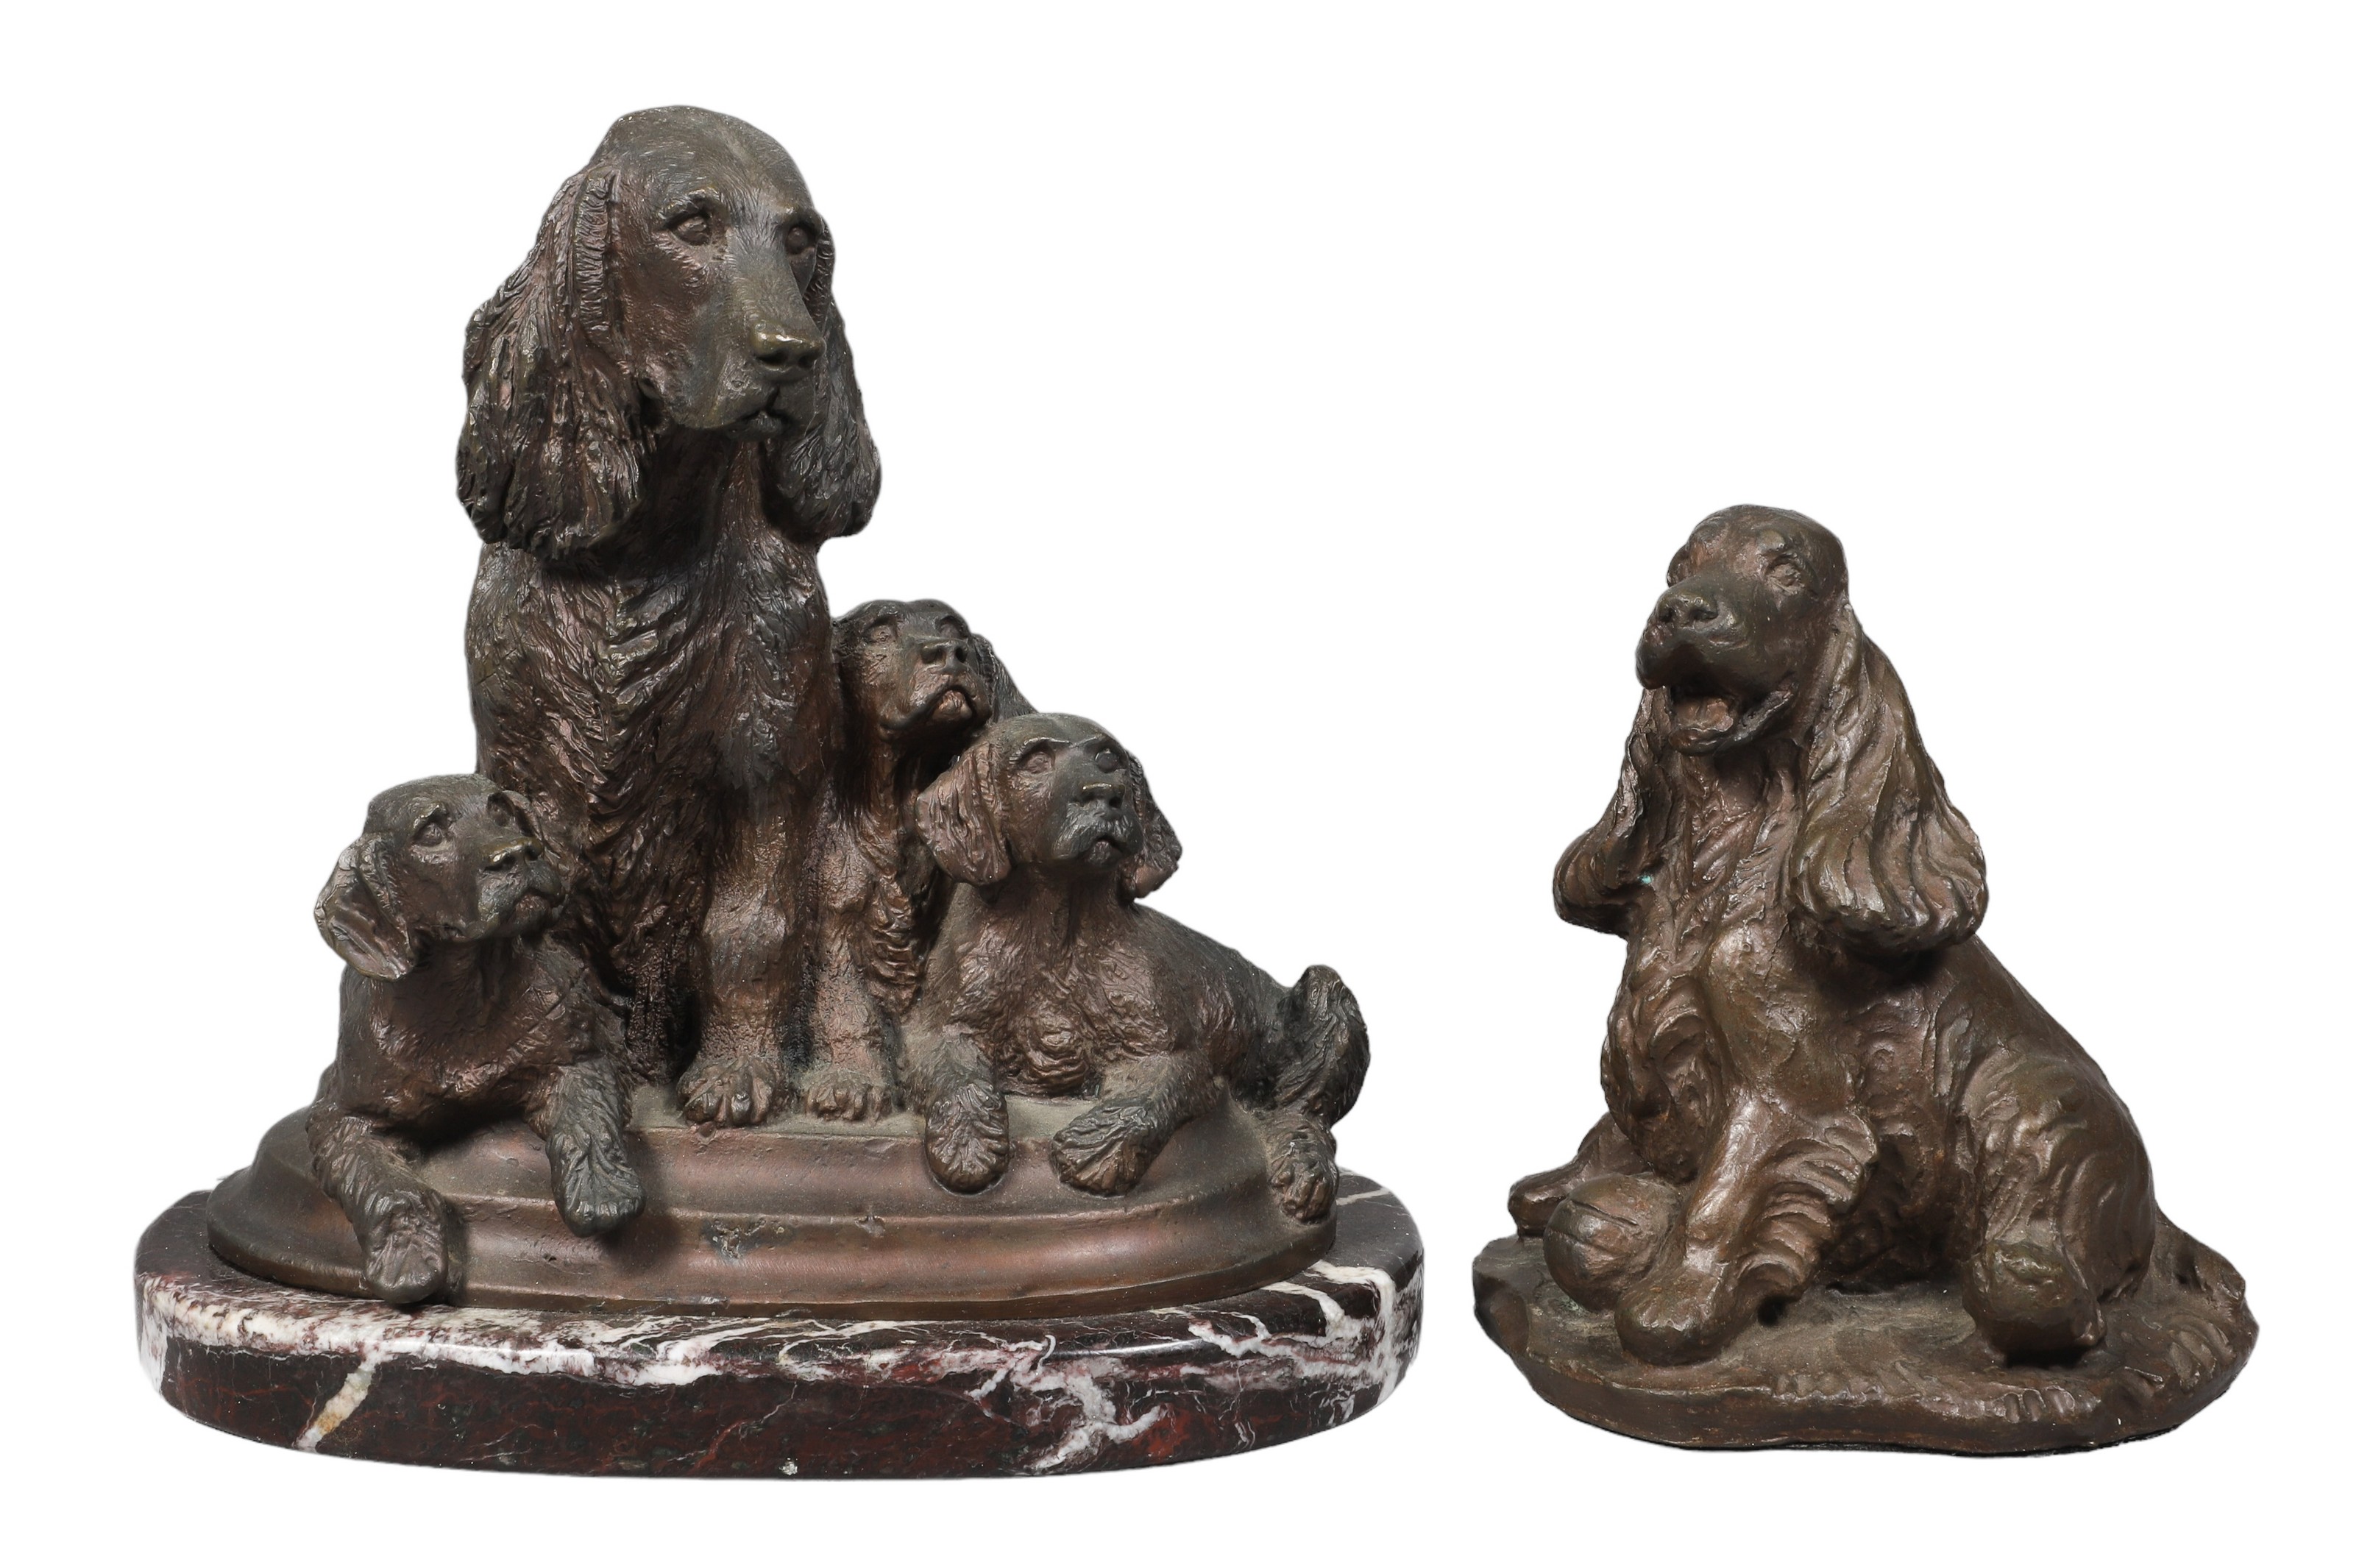  2 Spaniel dog sculptures c o 2e1176